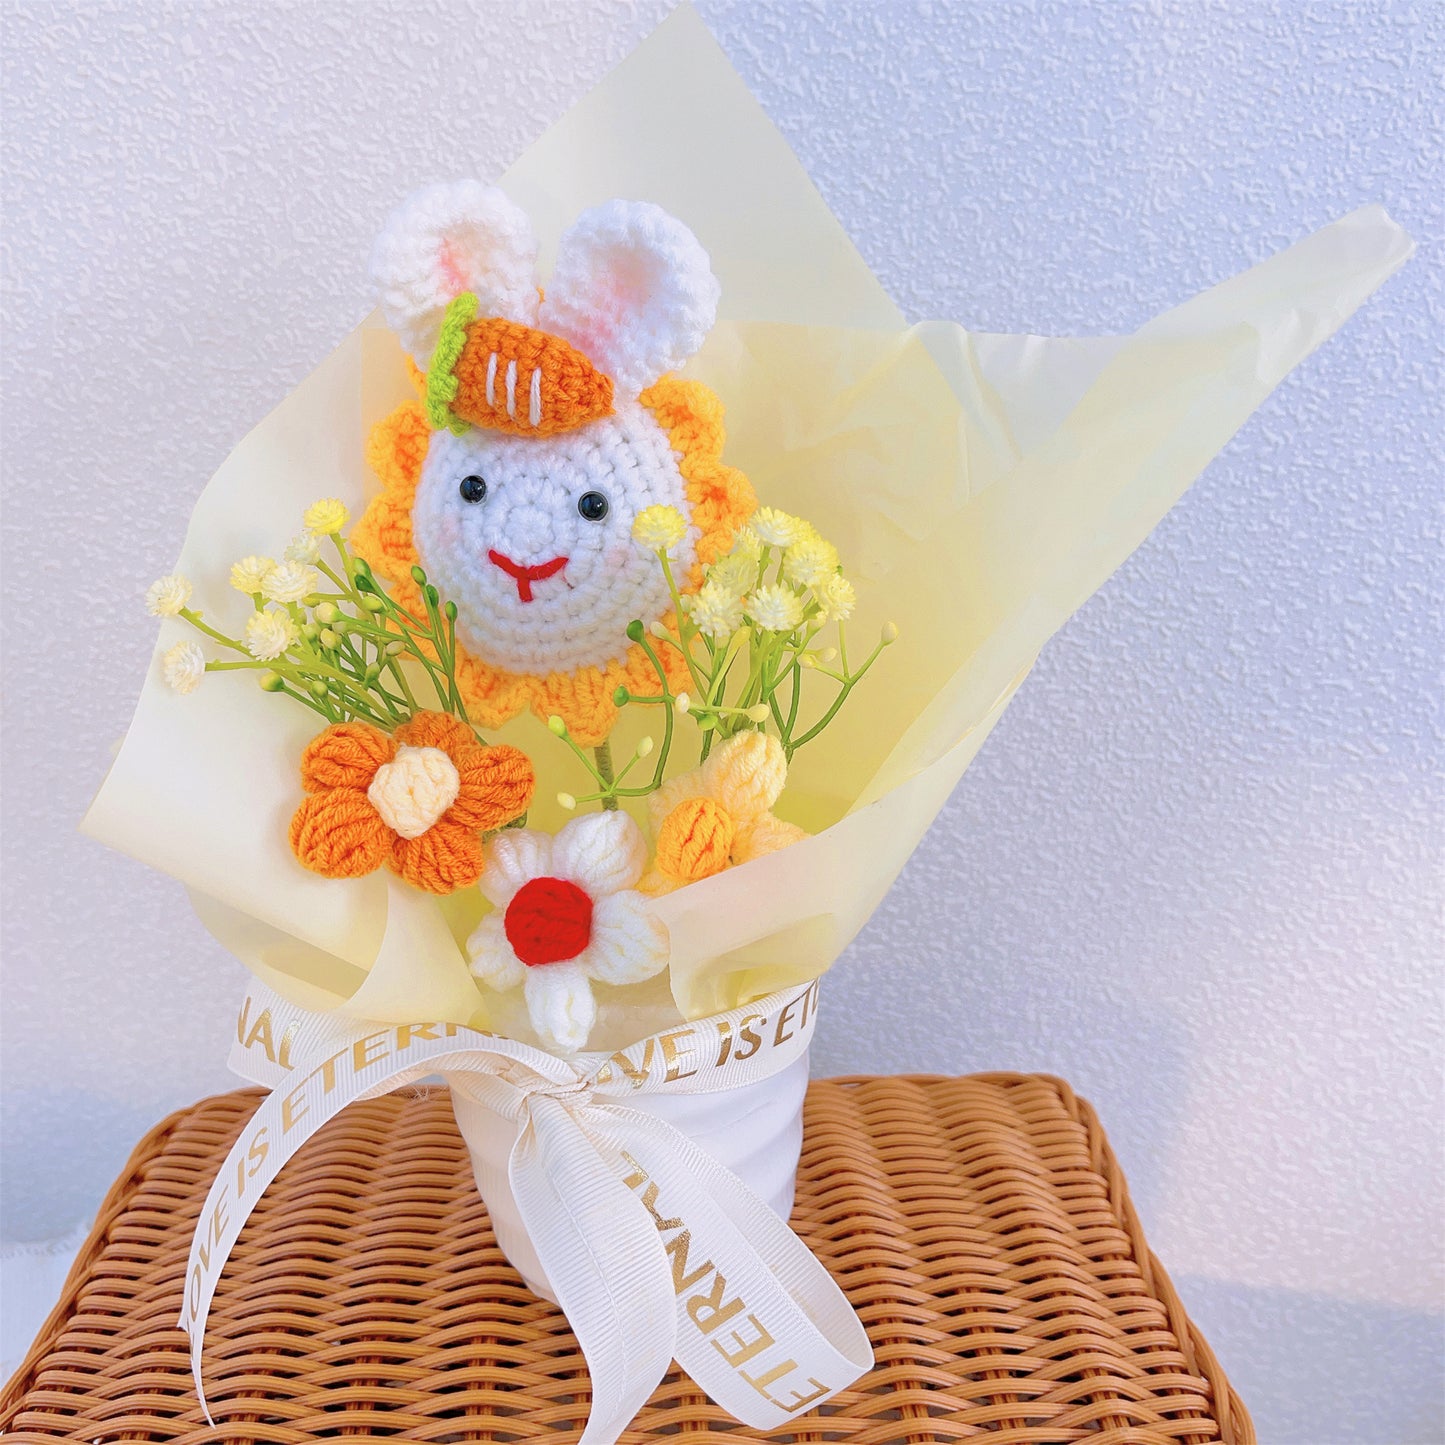 Handgefertigtes gestricktes Blumentopf-Set: Lebendige Sonnenblumen und zarte Puffballs – ideal für Heimdekoration, Geschenke und besondere Anlässe